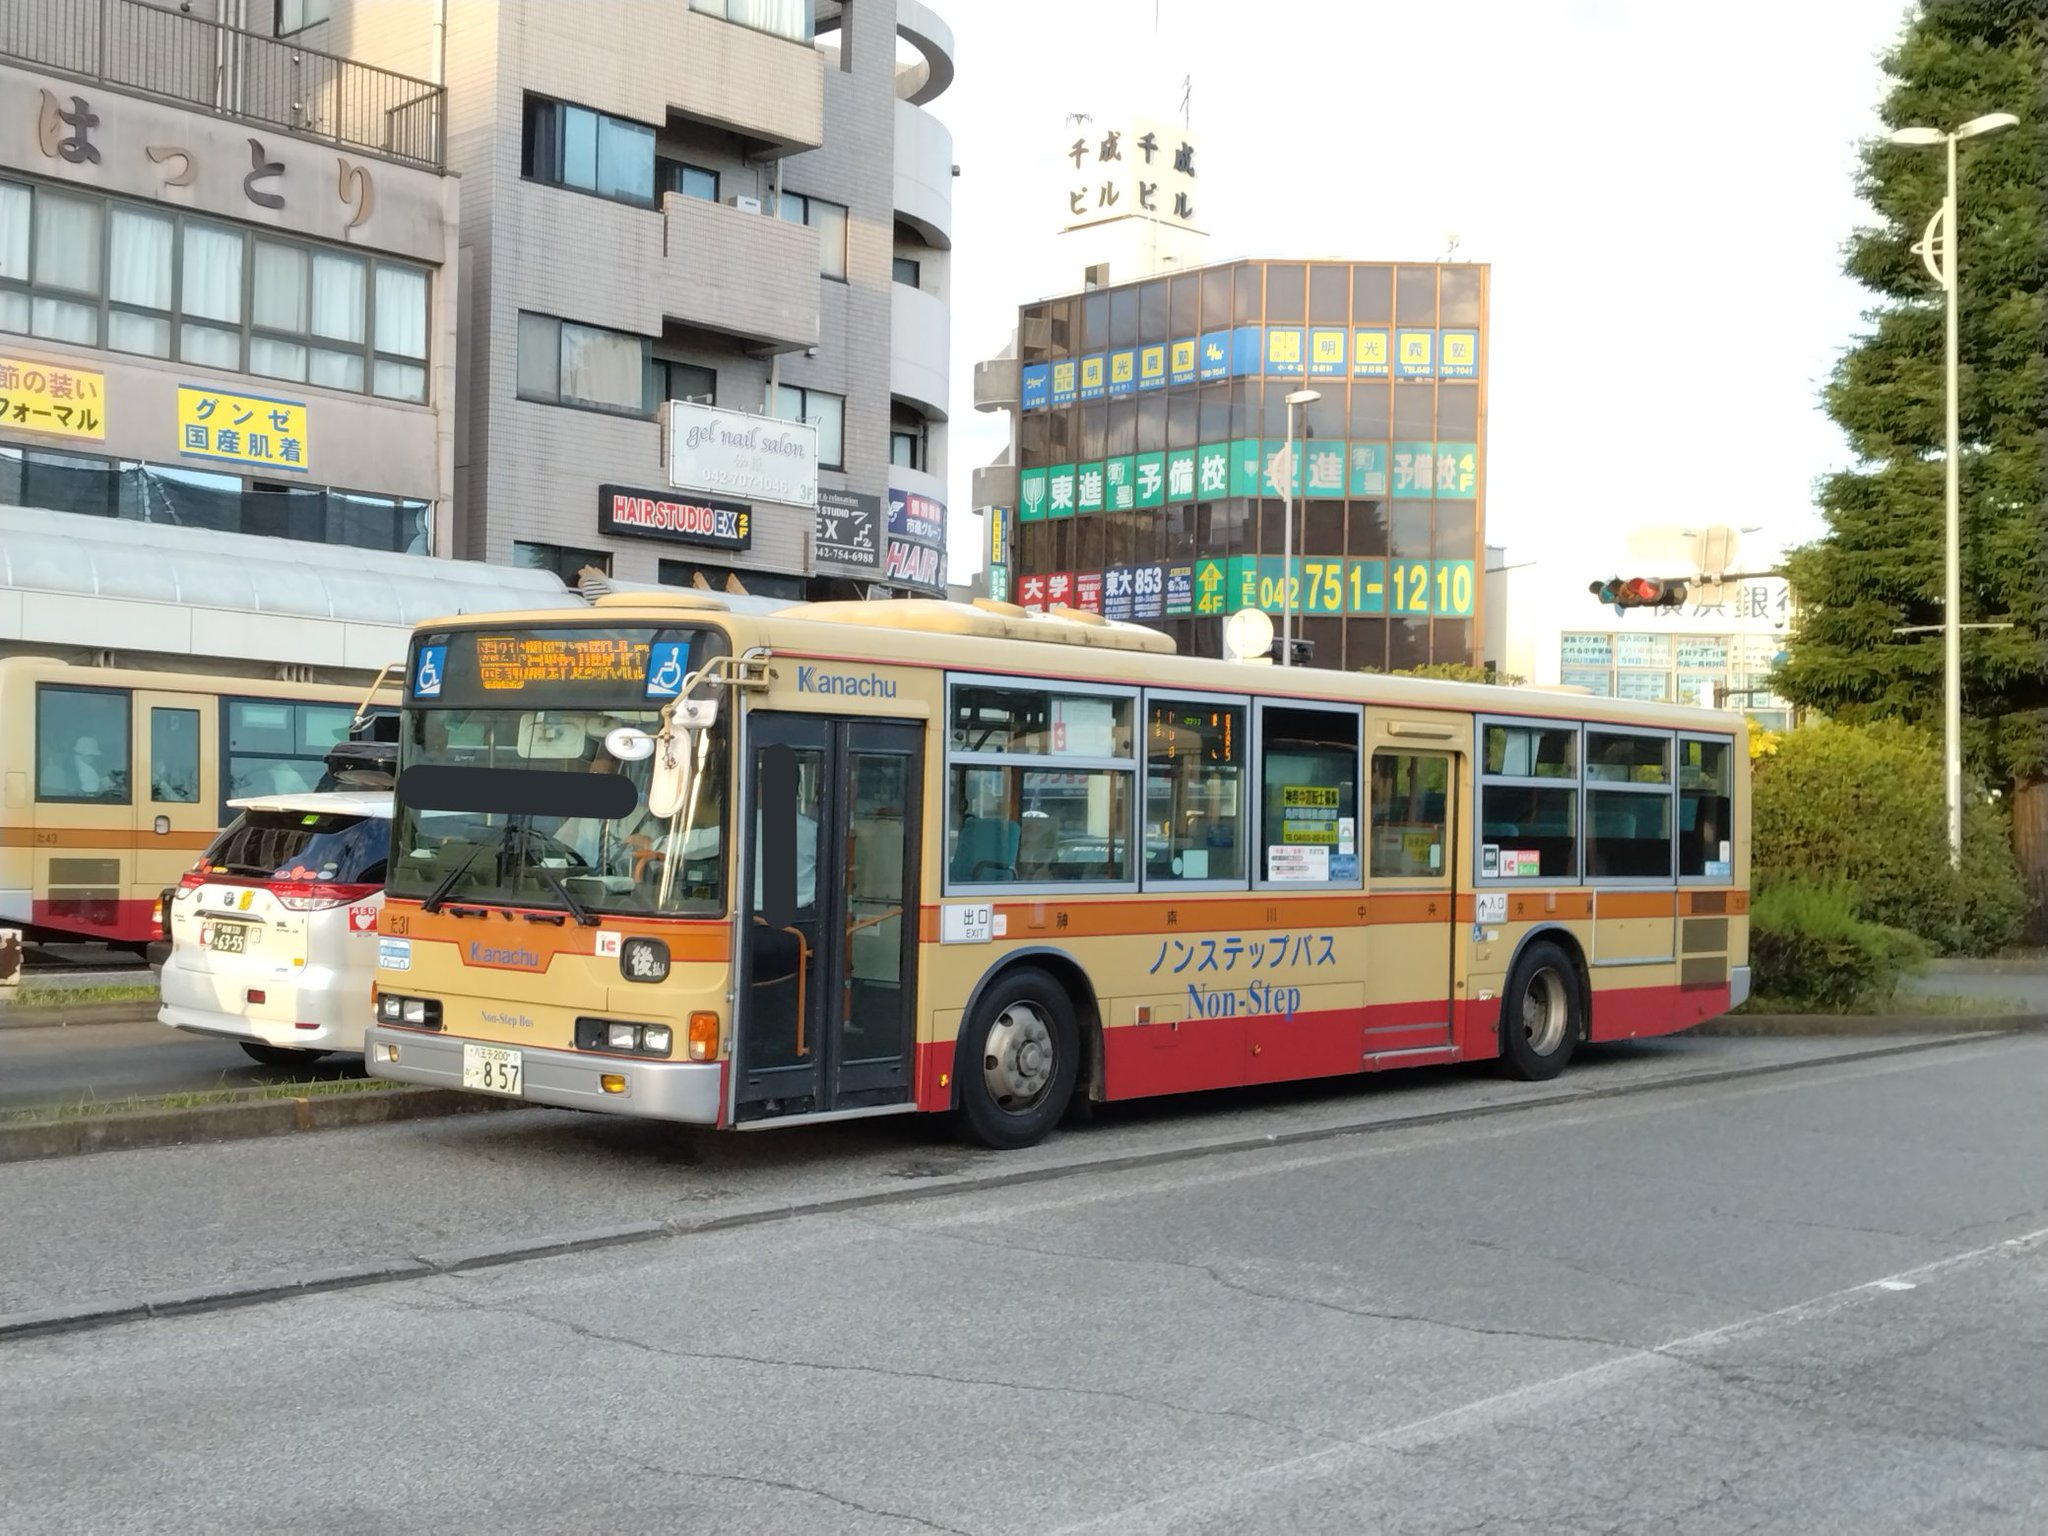 たぐちっ on Twitter: "さて、今日の神奈中は、多摩営業所た31号車です。やっぱりブルーリボンシティは人気だなぁと思いつつ、そんなに